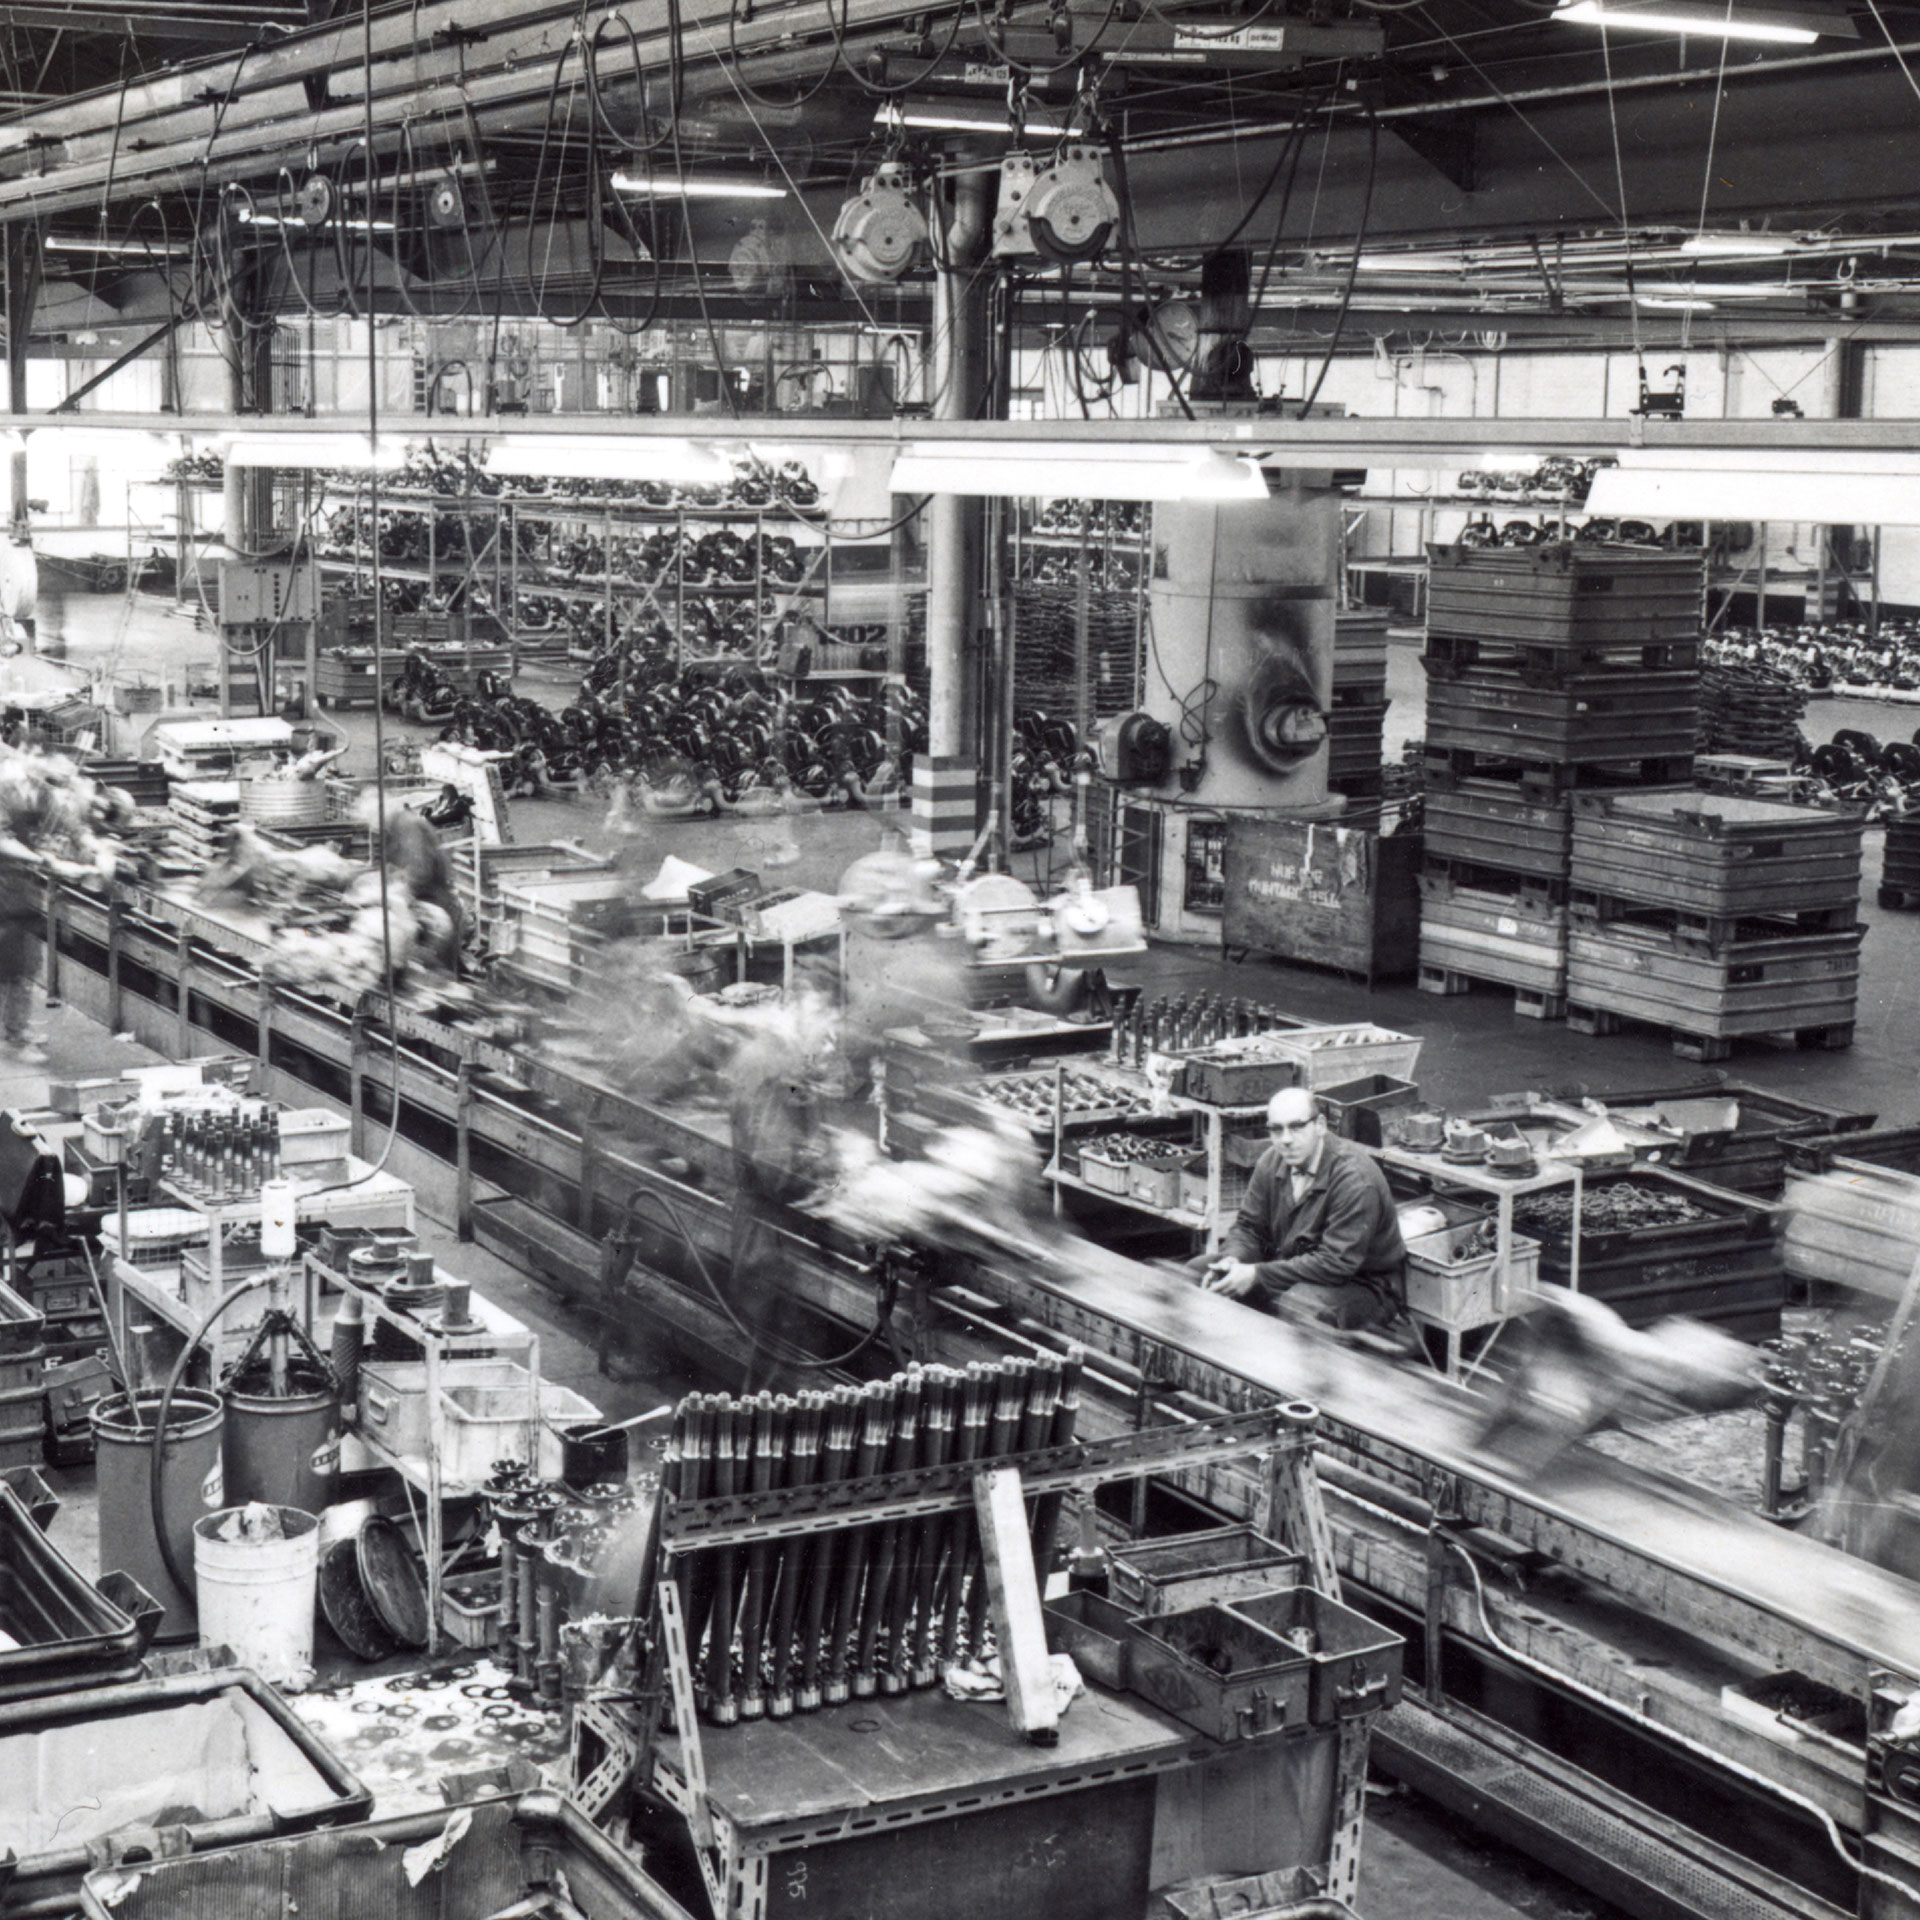 Dans cette photo en noir et blanc, on peut voir la chaîne de production des années 50 